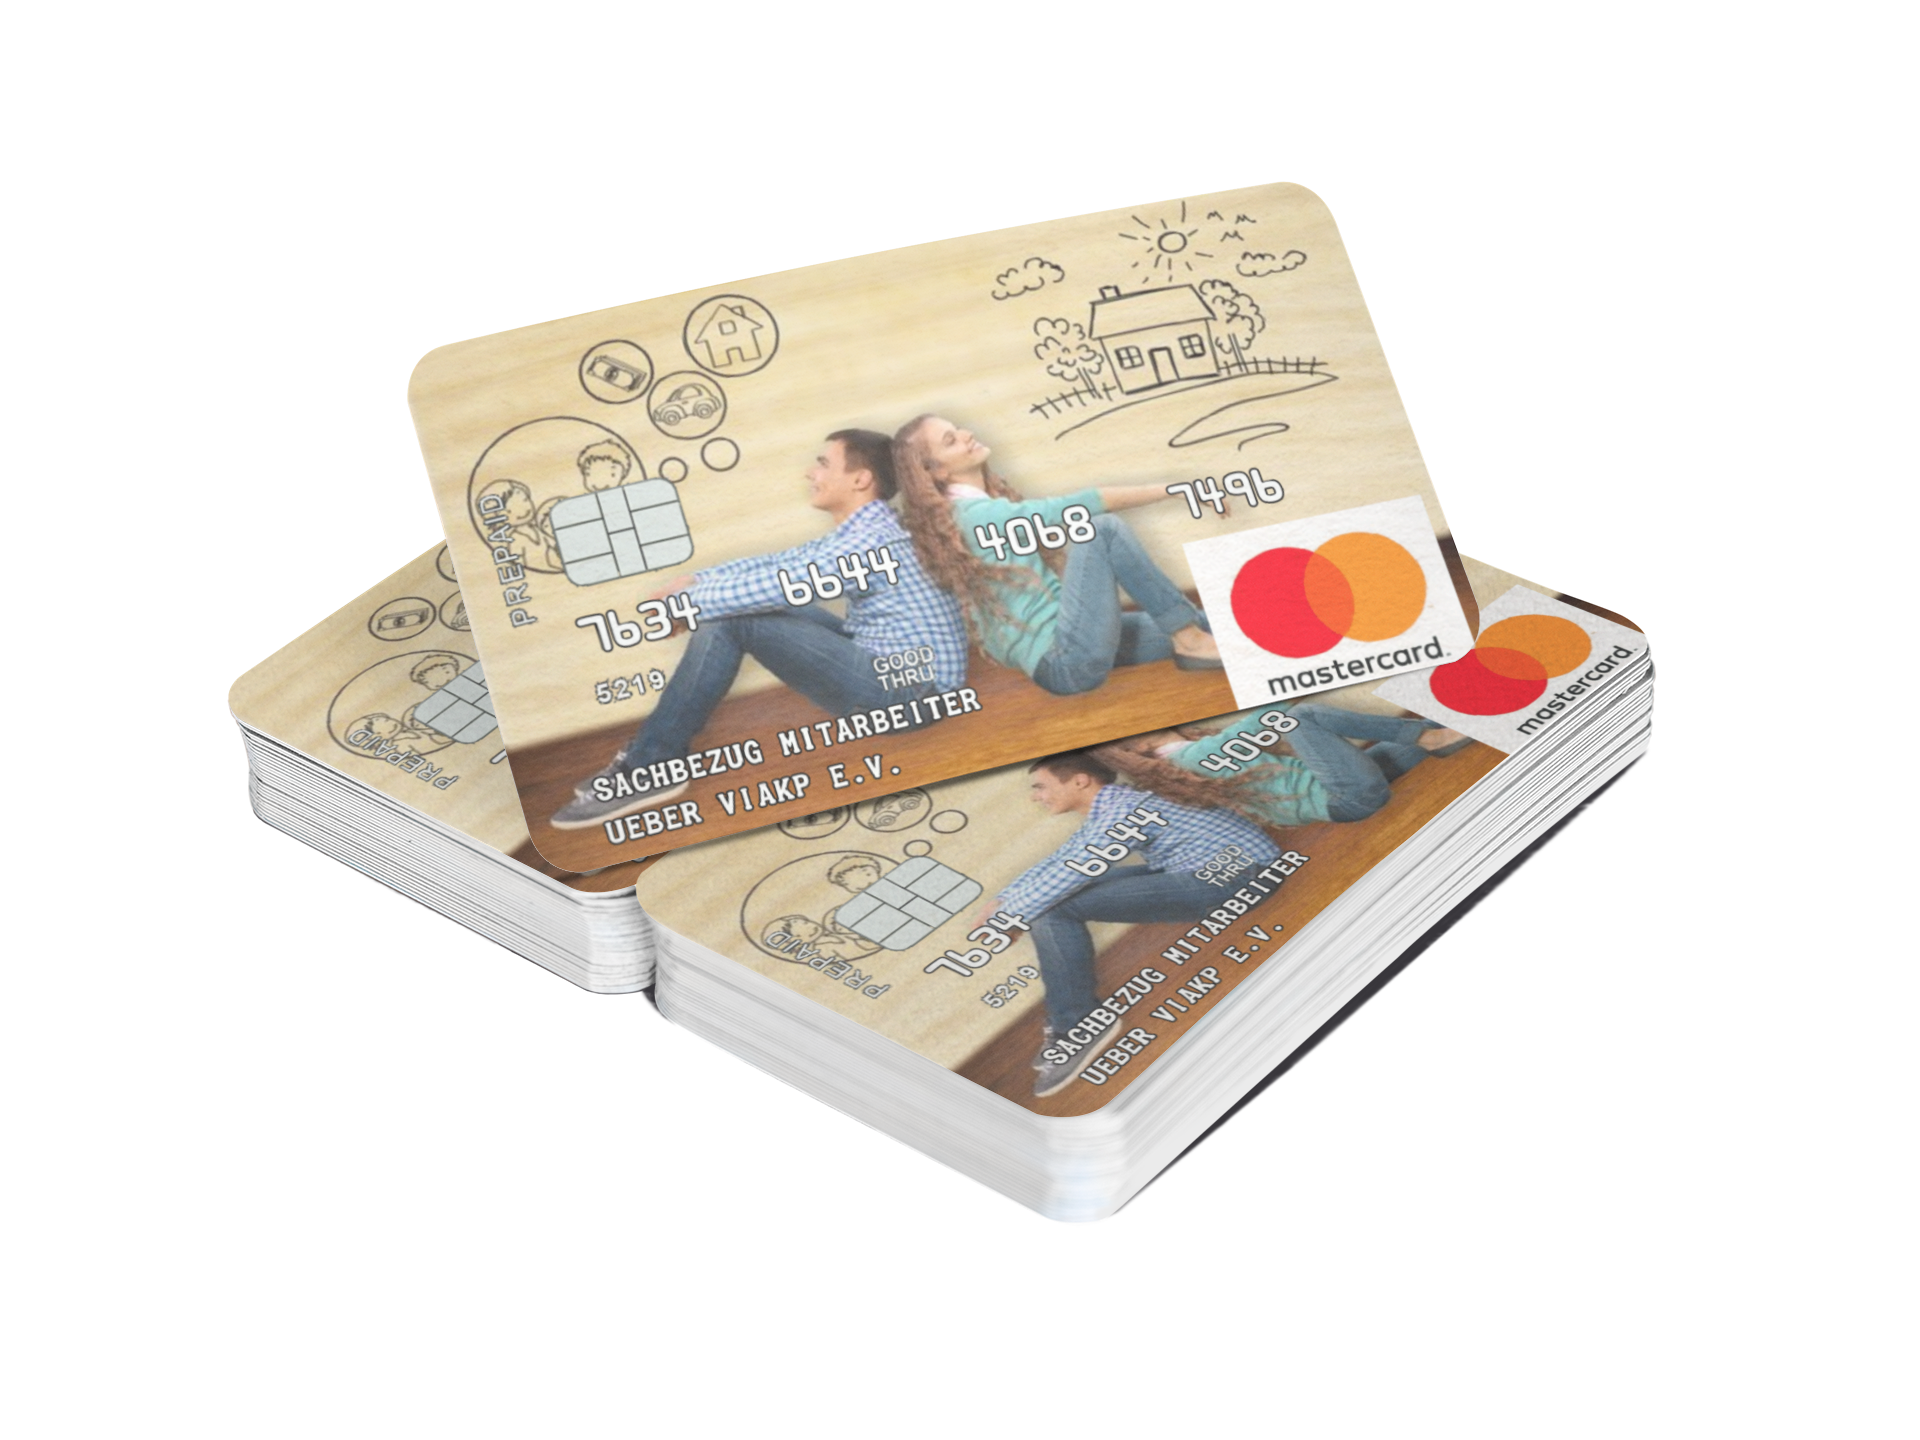 Die prepaid Debitkarte von Mastercrad